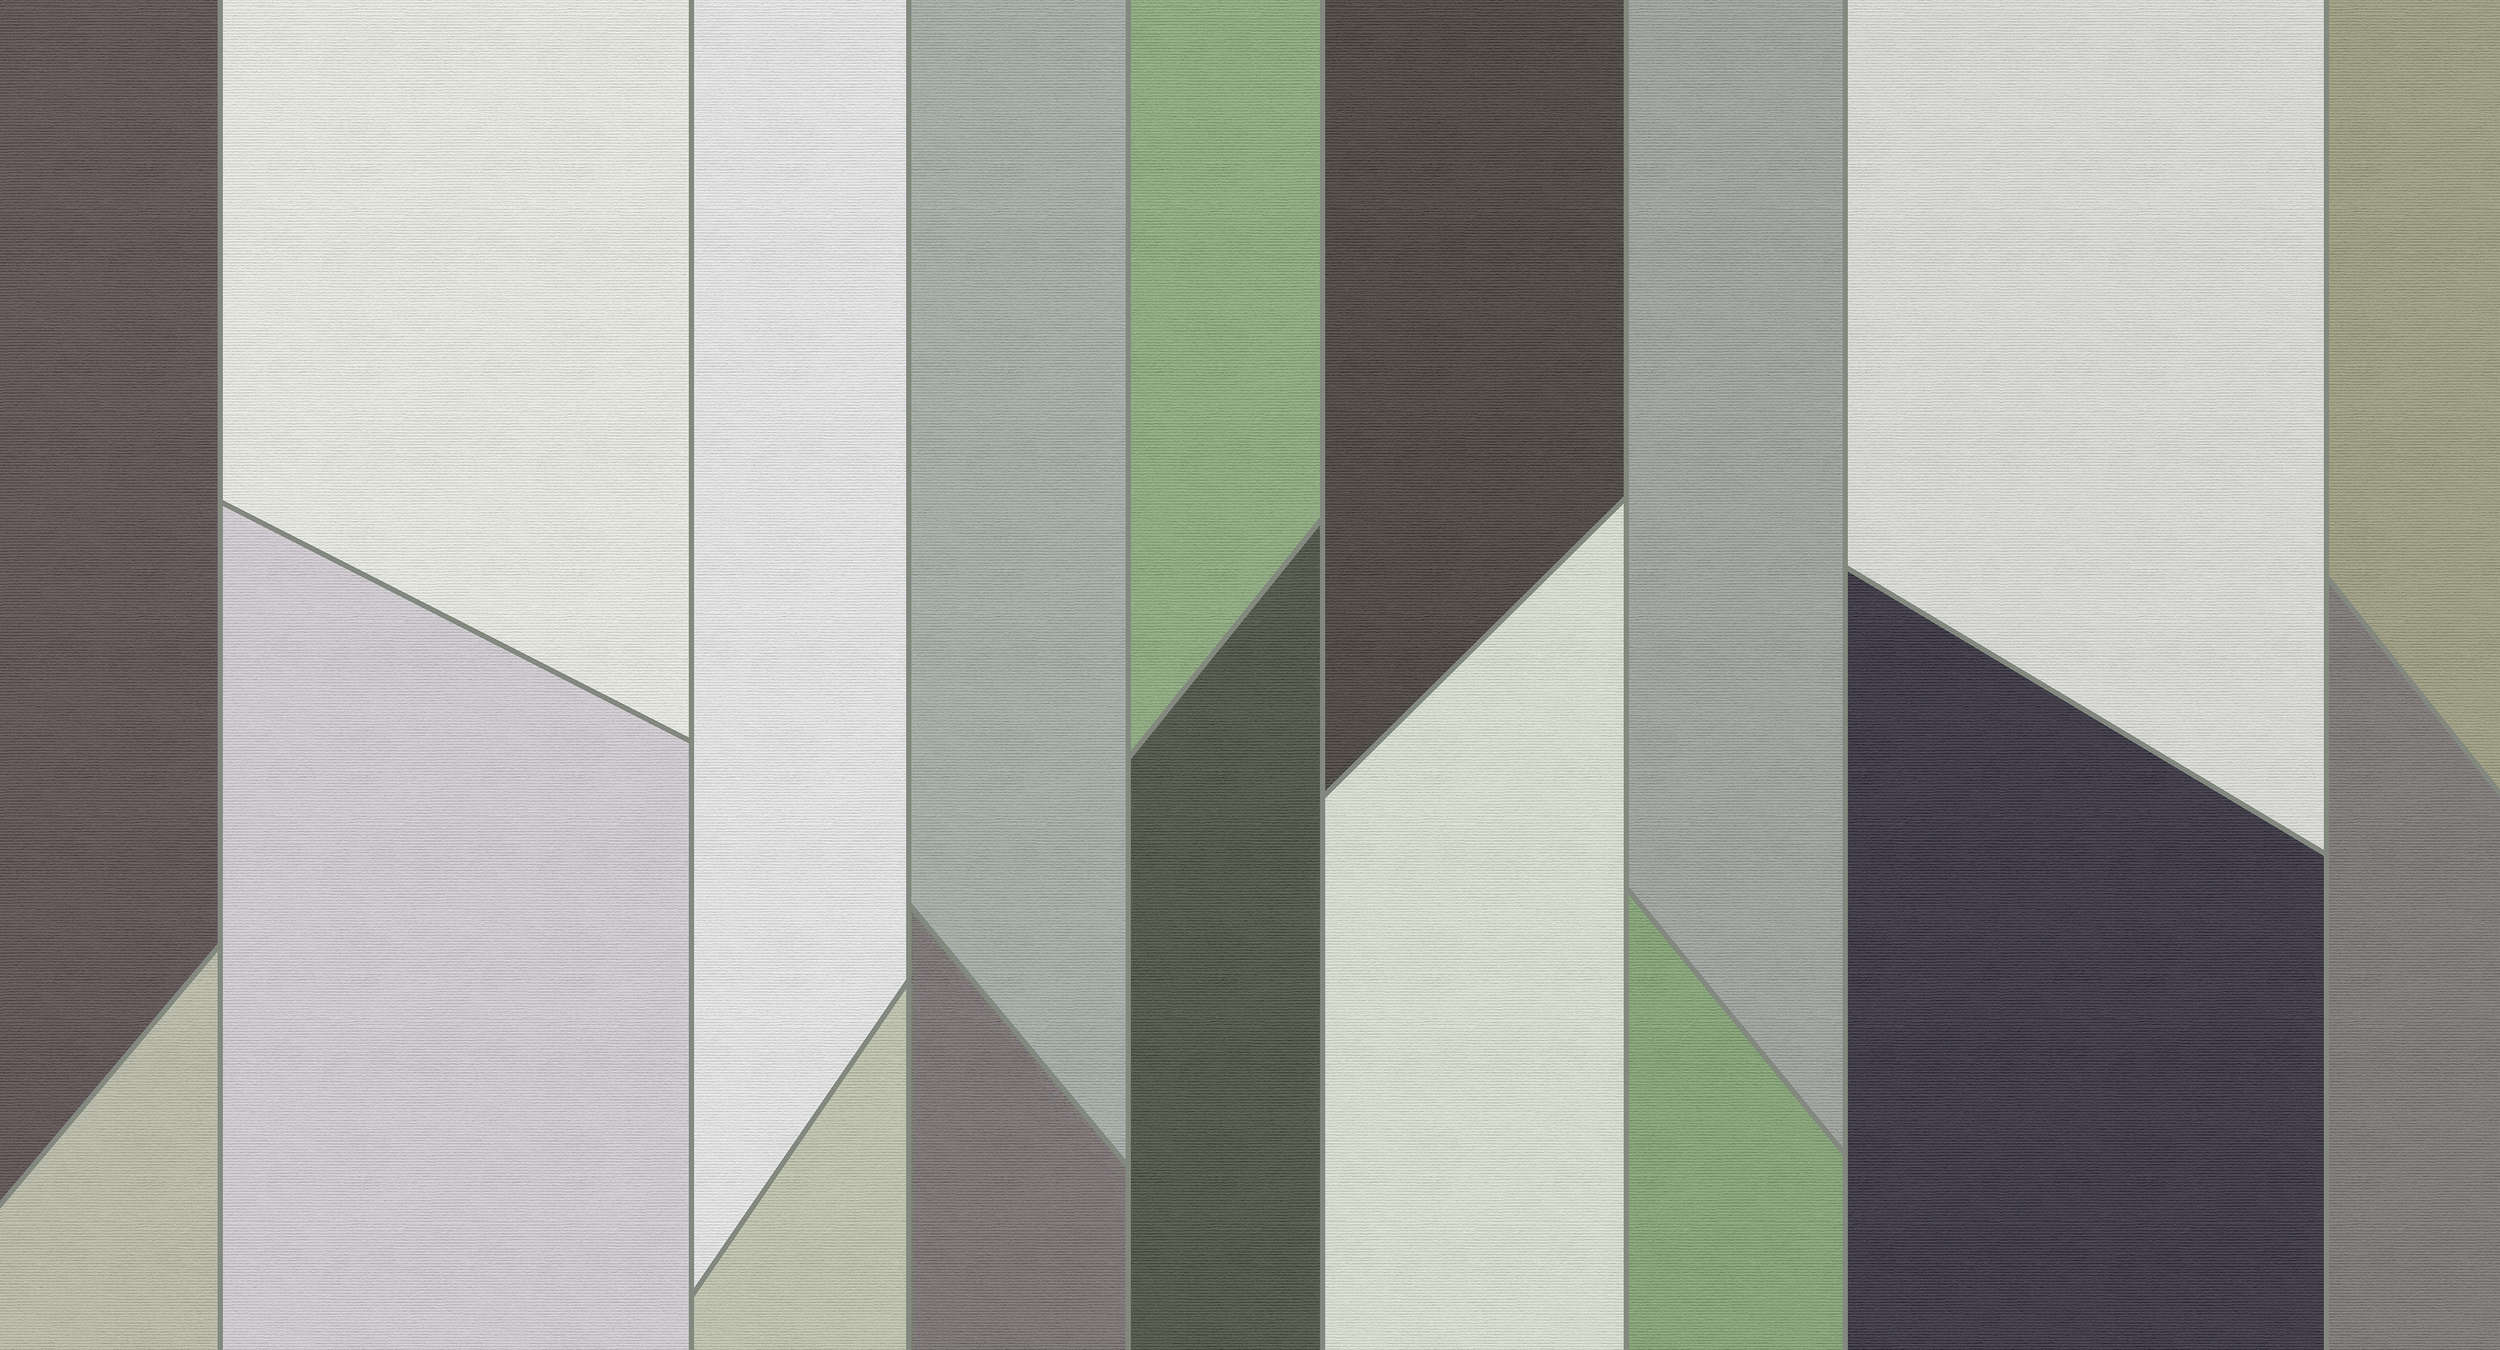             Geometry 3 - Carta da parati a righe con struttura a coste e disegno retrò colorato - Verde, Viola | Natura qualita consistenza in tessuto non tessuto
        